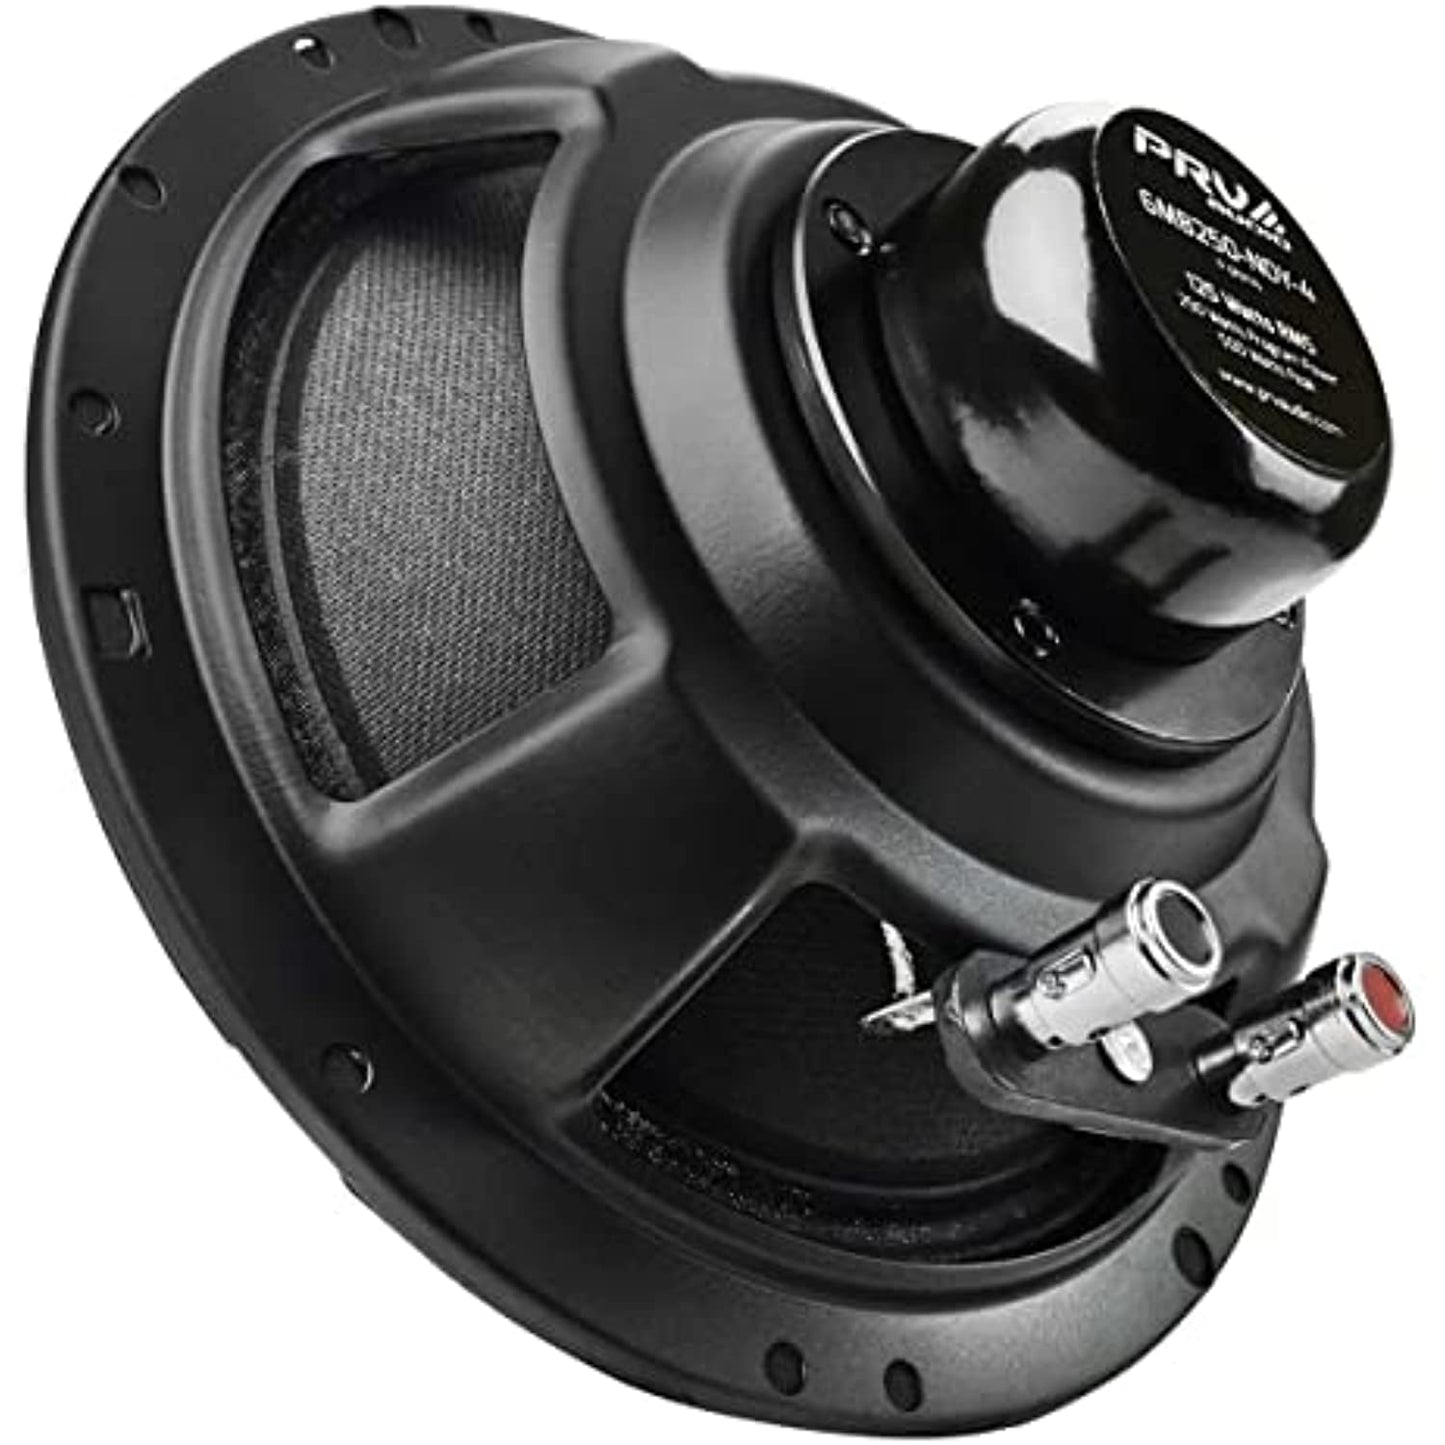 2x PRV Audio 6MB250-NDY-4 Midbass Neodymium 6.5" Speakers 4 Ohm 6MB PRO Neo 500W